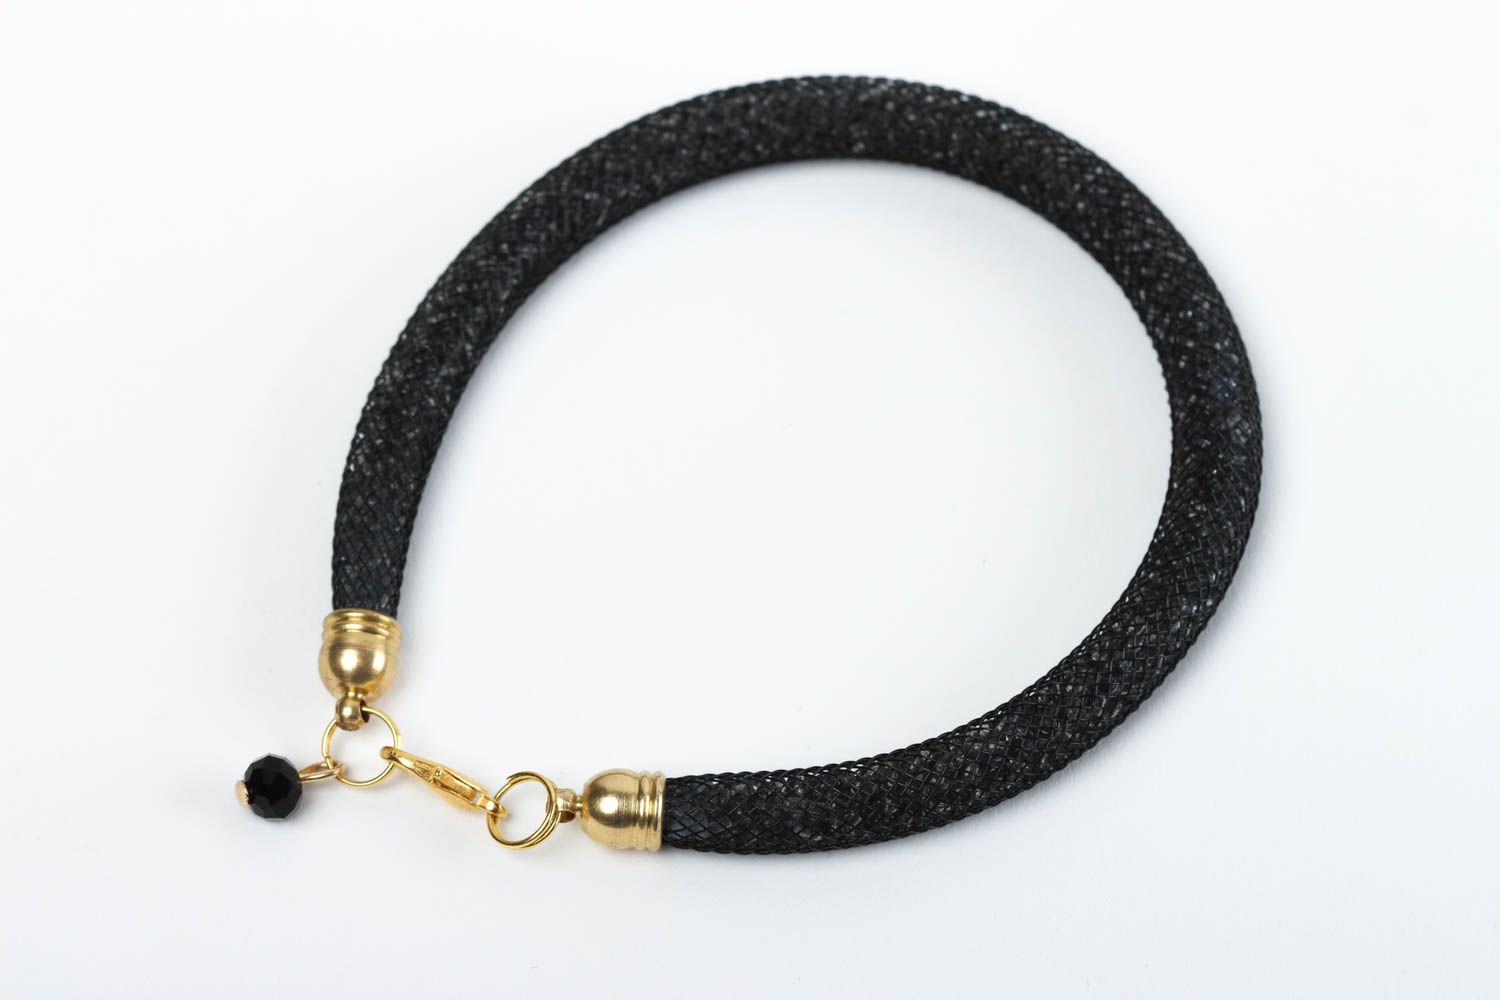 Handmade bracelet designer accessory beads bracelet gift for her beads jewelry photo 1